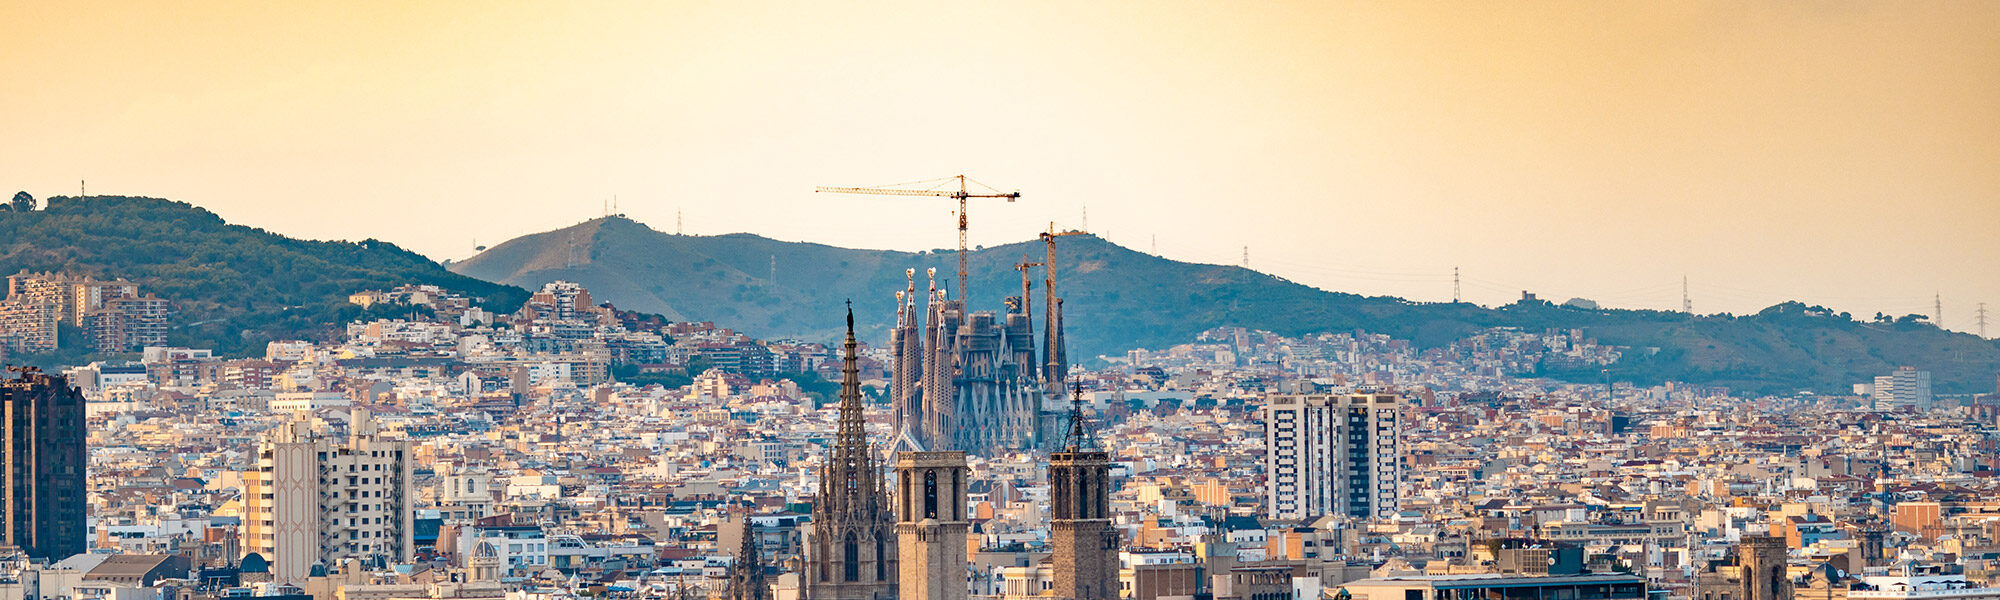 Tips voor bezienswaardigheden om te fotograferen in Barcelona